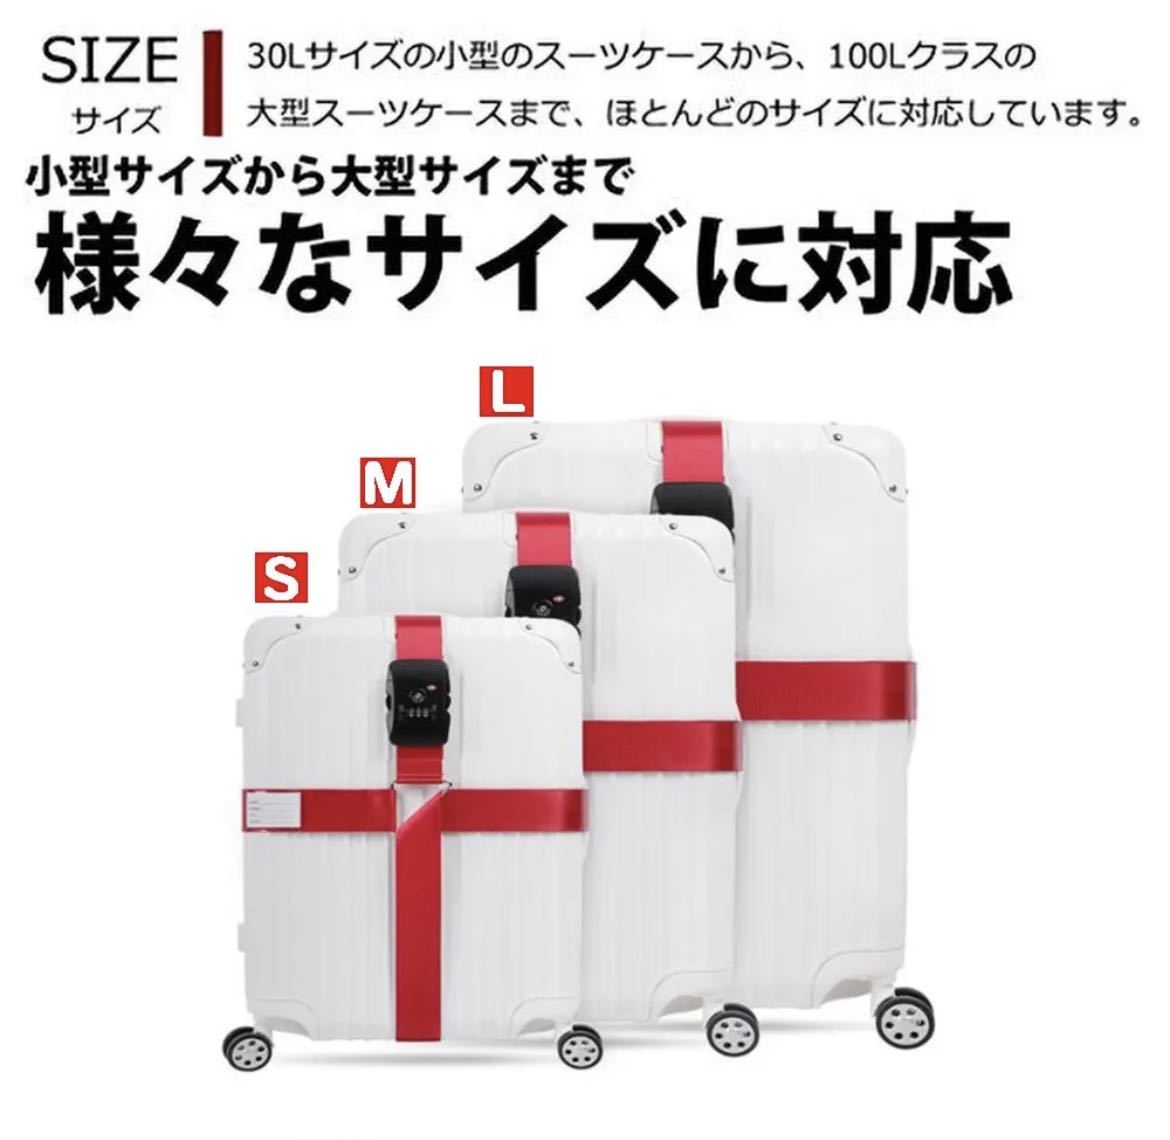 【アップグレード版】レッド スーツケース ベルト ロック付き 十字型 荷物崩れ防止 調整可能 固定ベルト 旅行_画像6